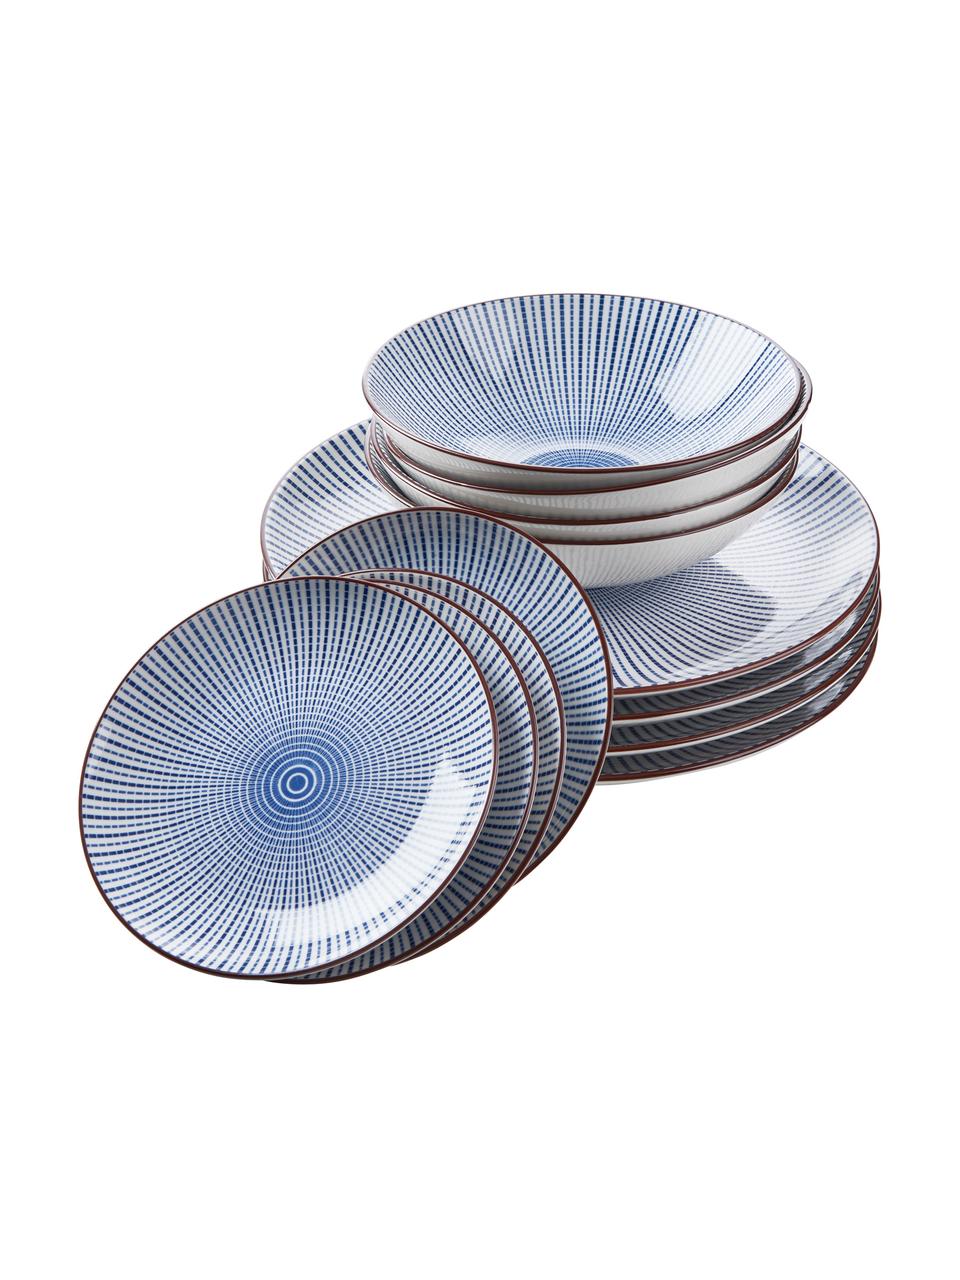 Geschirr-Set Dim Sum mit feinem Muster in Blau/Weiß, 4 Personen (12-tlg.), Keramik, Blau, Weiß, Braun, Sondergrößen